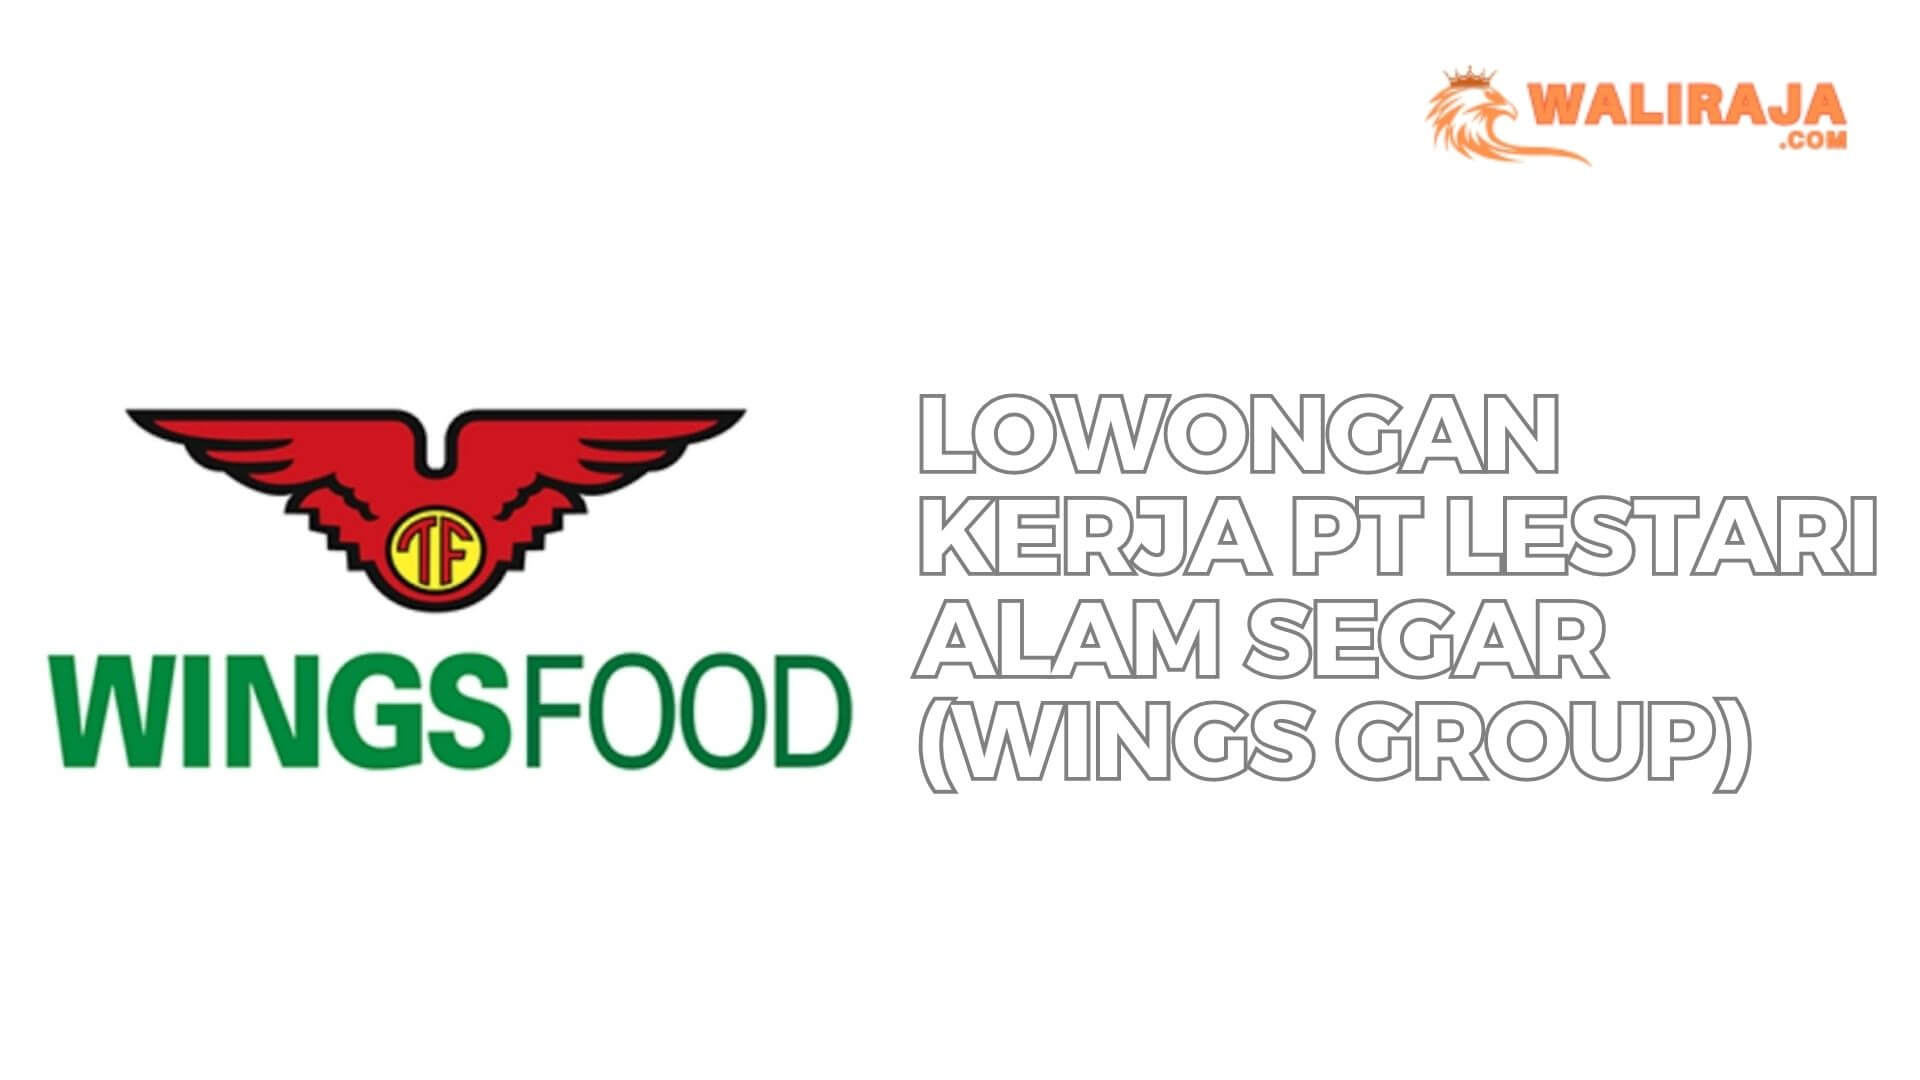 Lowongan Kerja PT Lestari Alam Segar (Wings Group)